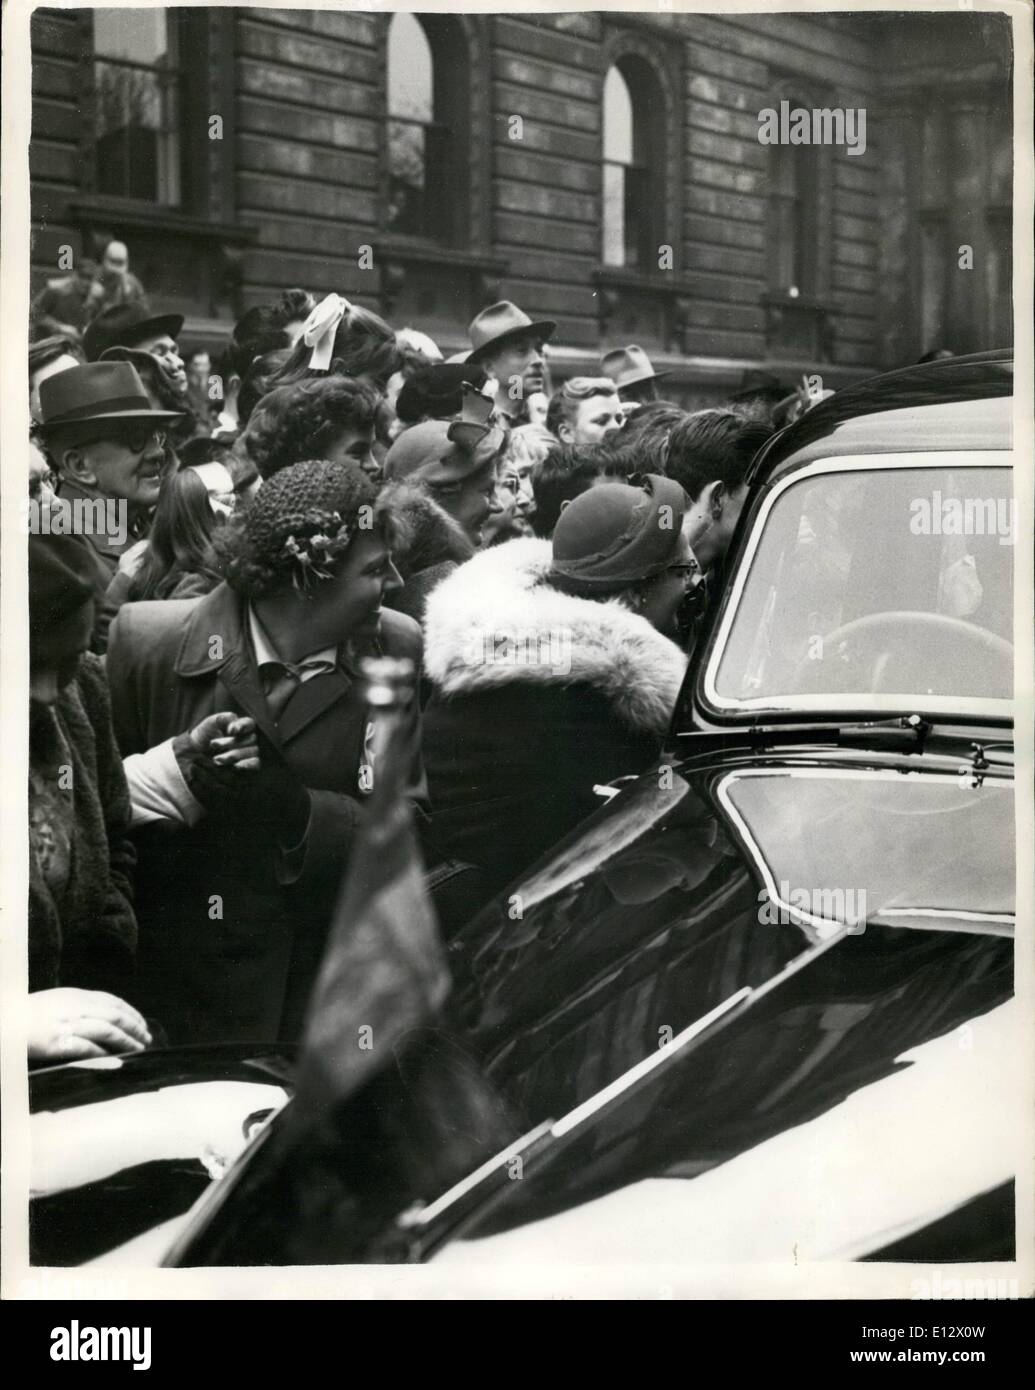 25 février 2012 - des foules se rassemblent autour de la voiture de Churchill comme les feuilles n° 10 Downing . Pour les chèques après une réunion spéciale de colonel. Banque D'Images